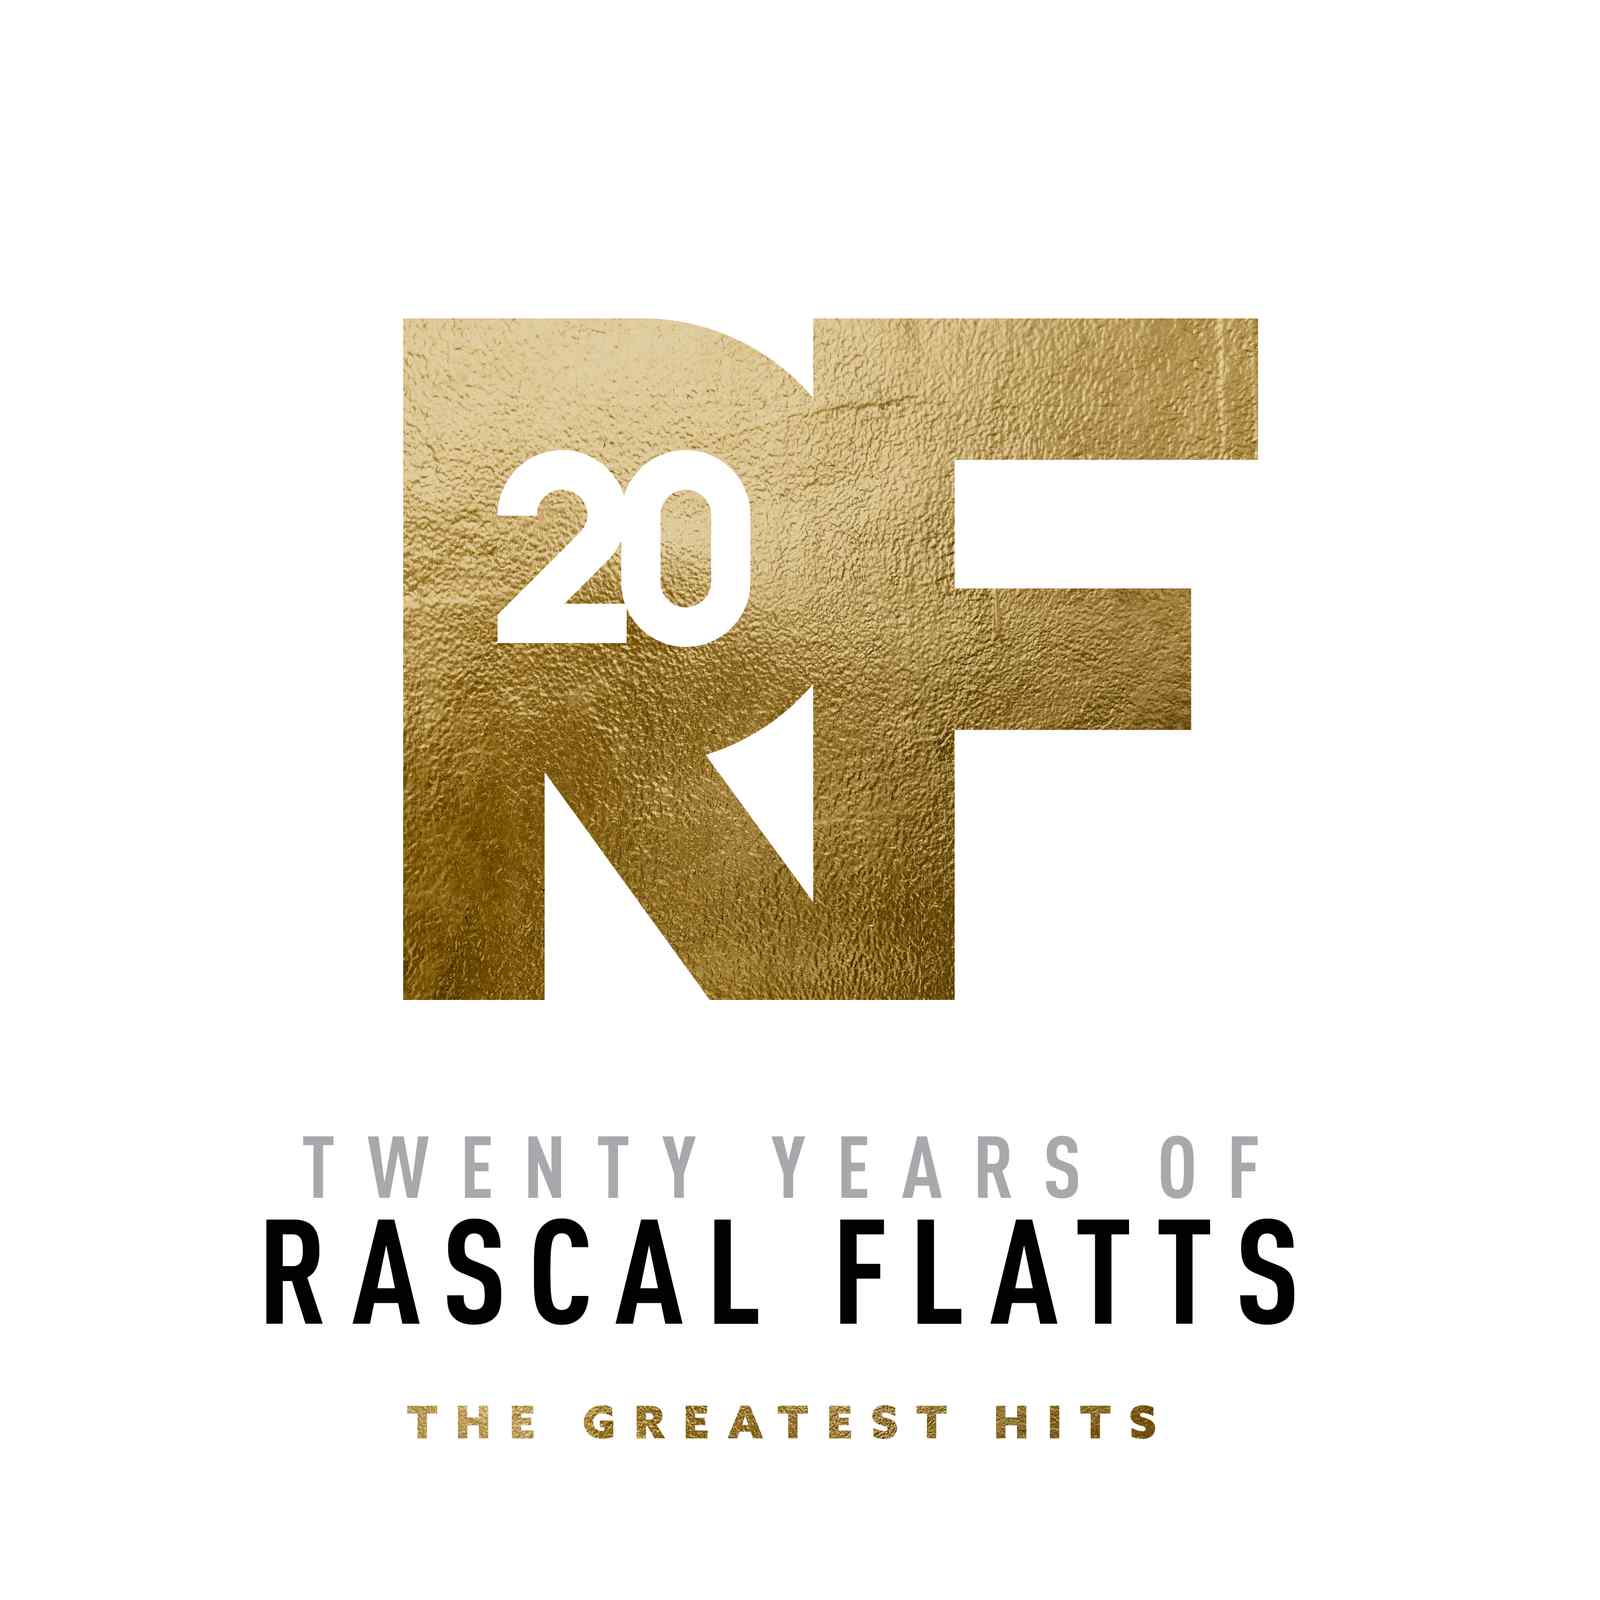 Twenty Years of Rascal Flatts The Greatest Hits by Rascal Flatts